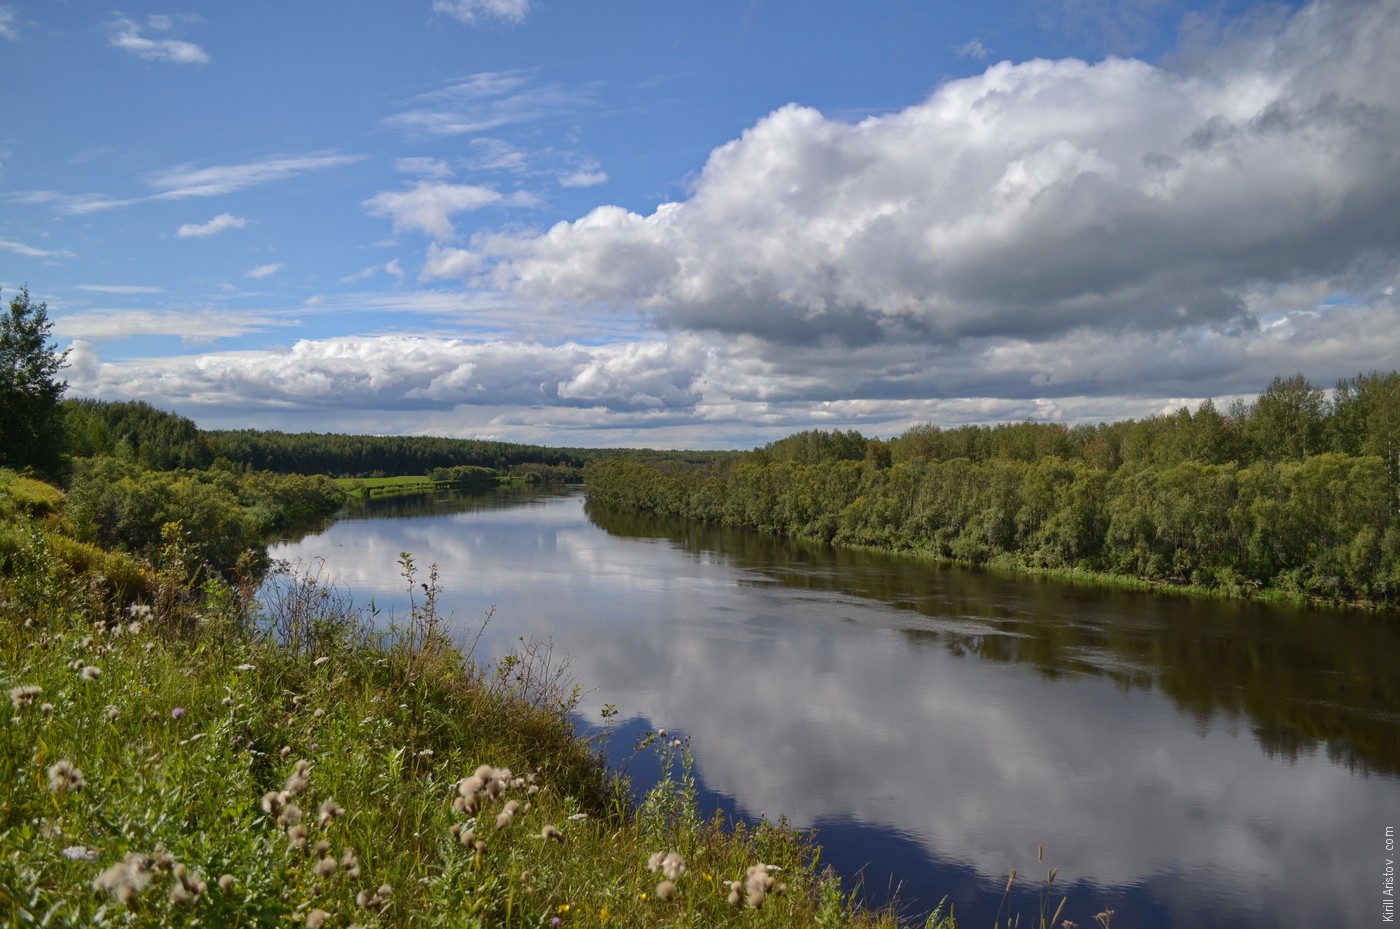 Когда-то на этом высоком косогоре была деревня Муромка, Location: Река Васюган, устье реки Пёноровка. Каргасокский район, Томская область, Россия.